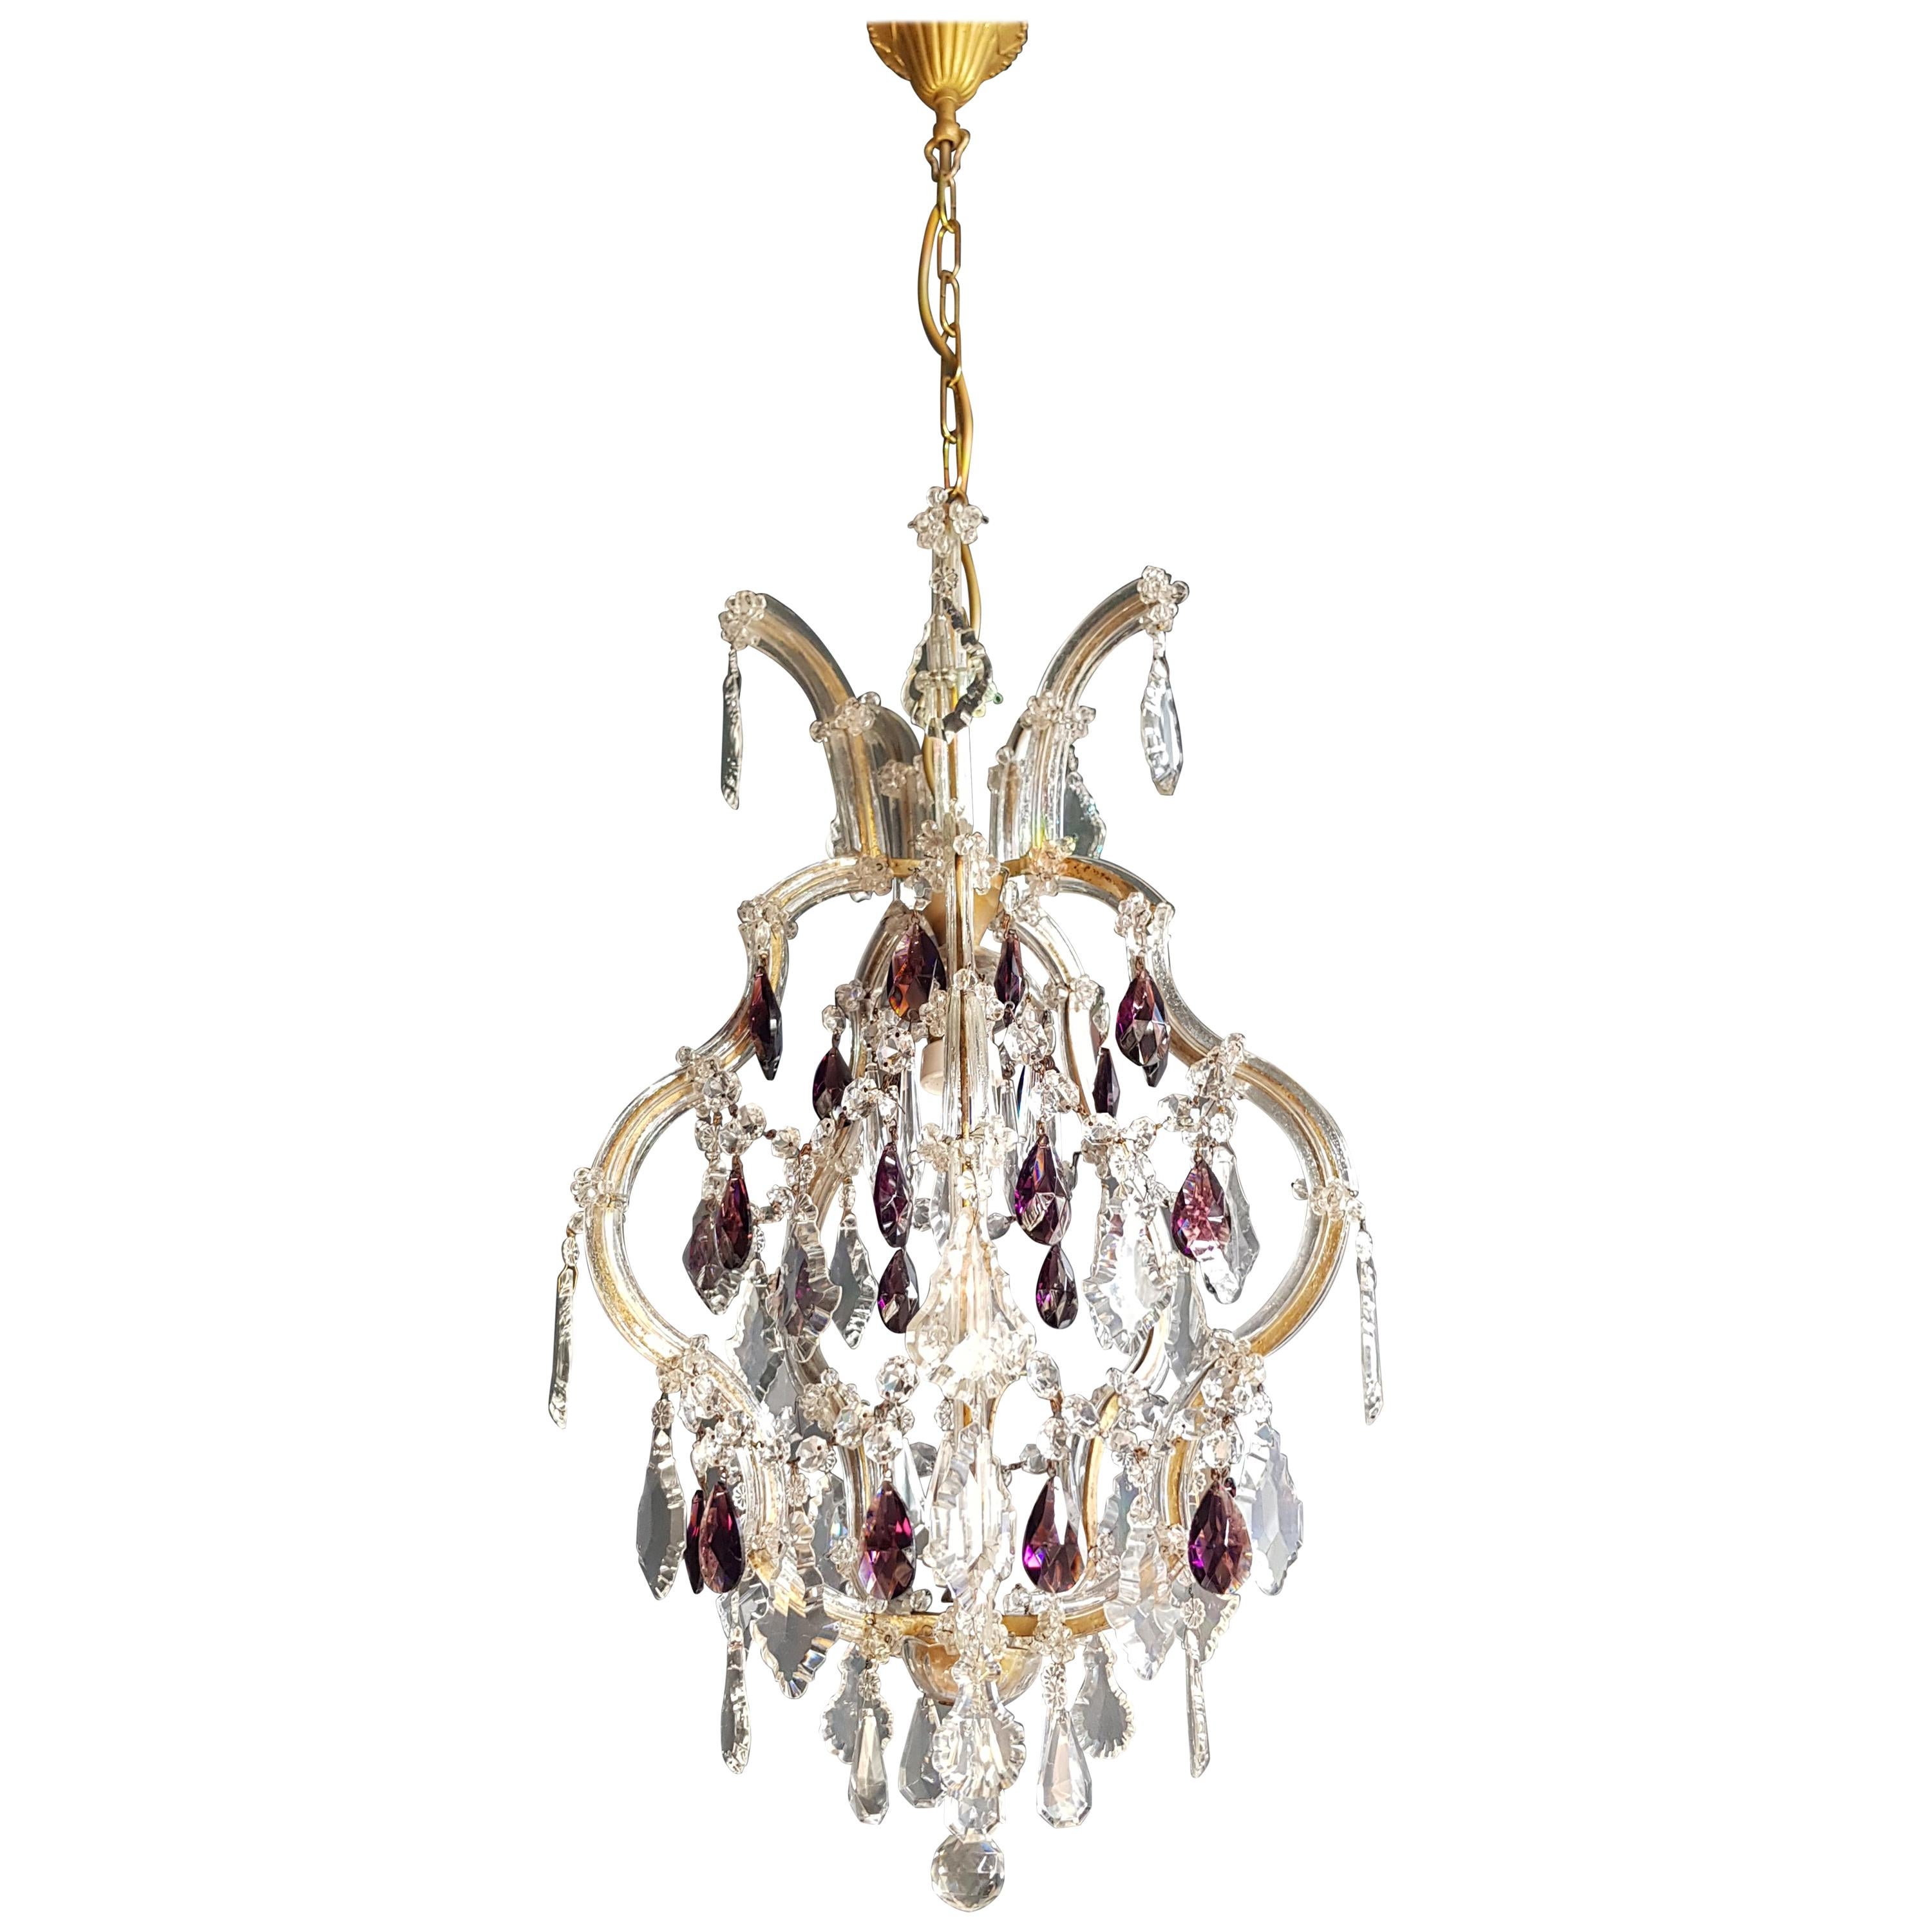 Maria Theresa Crystal Purple Chandelier Antique Ceiling Lamp Lustre Art Nouveau